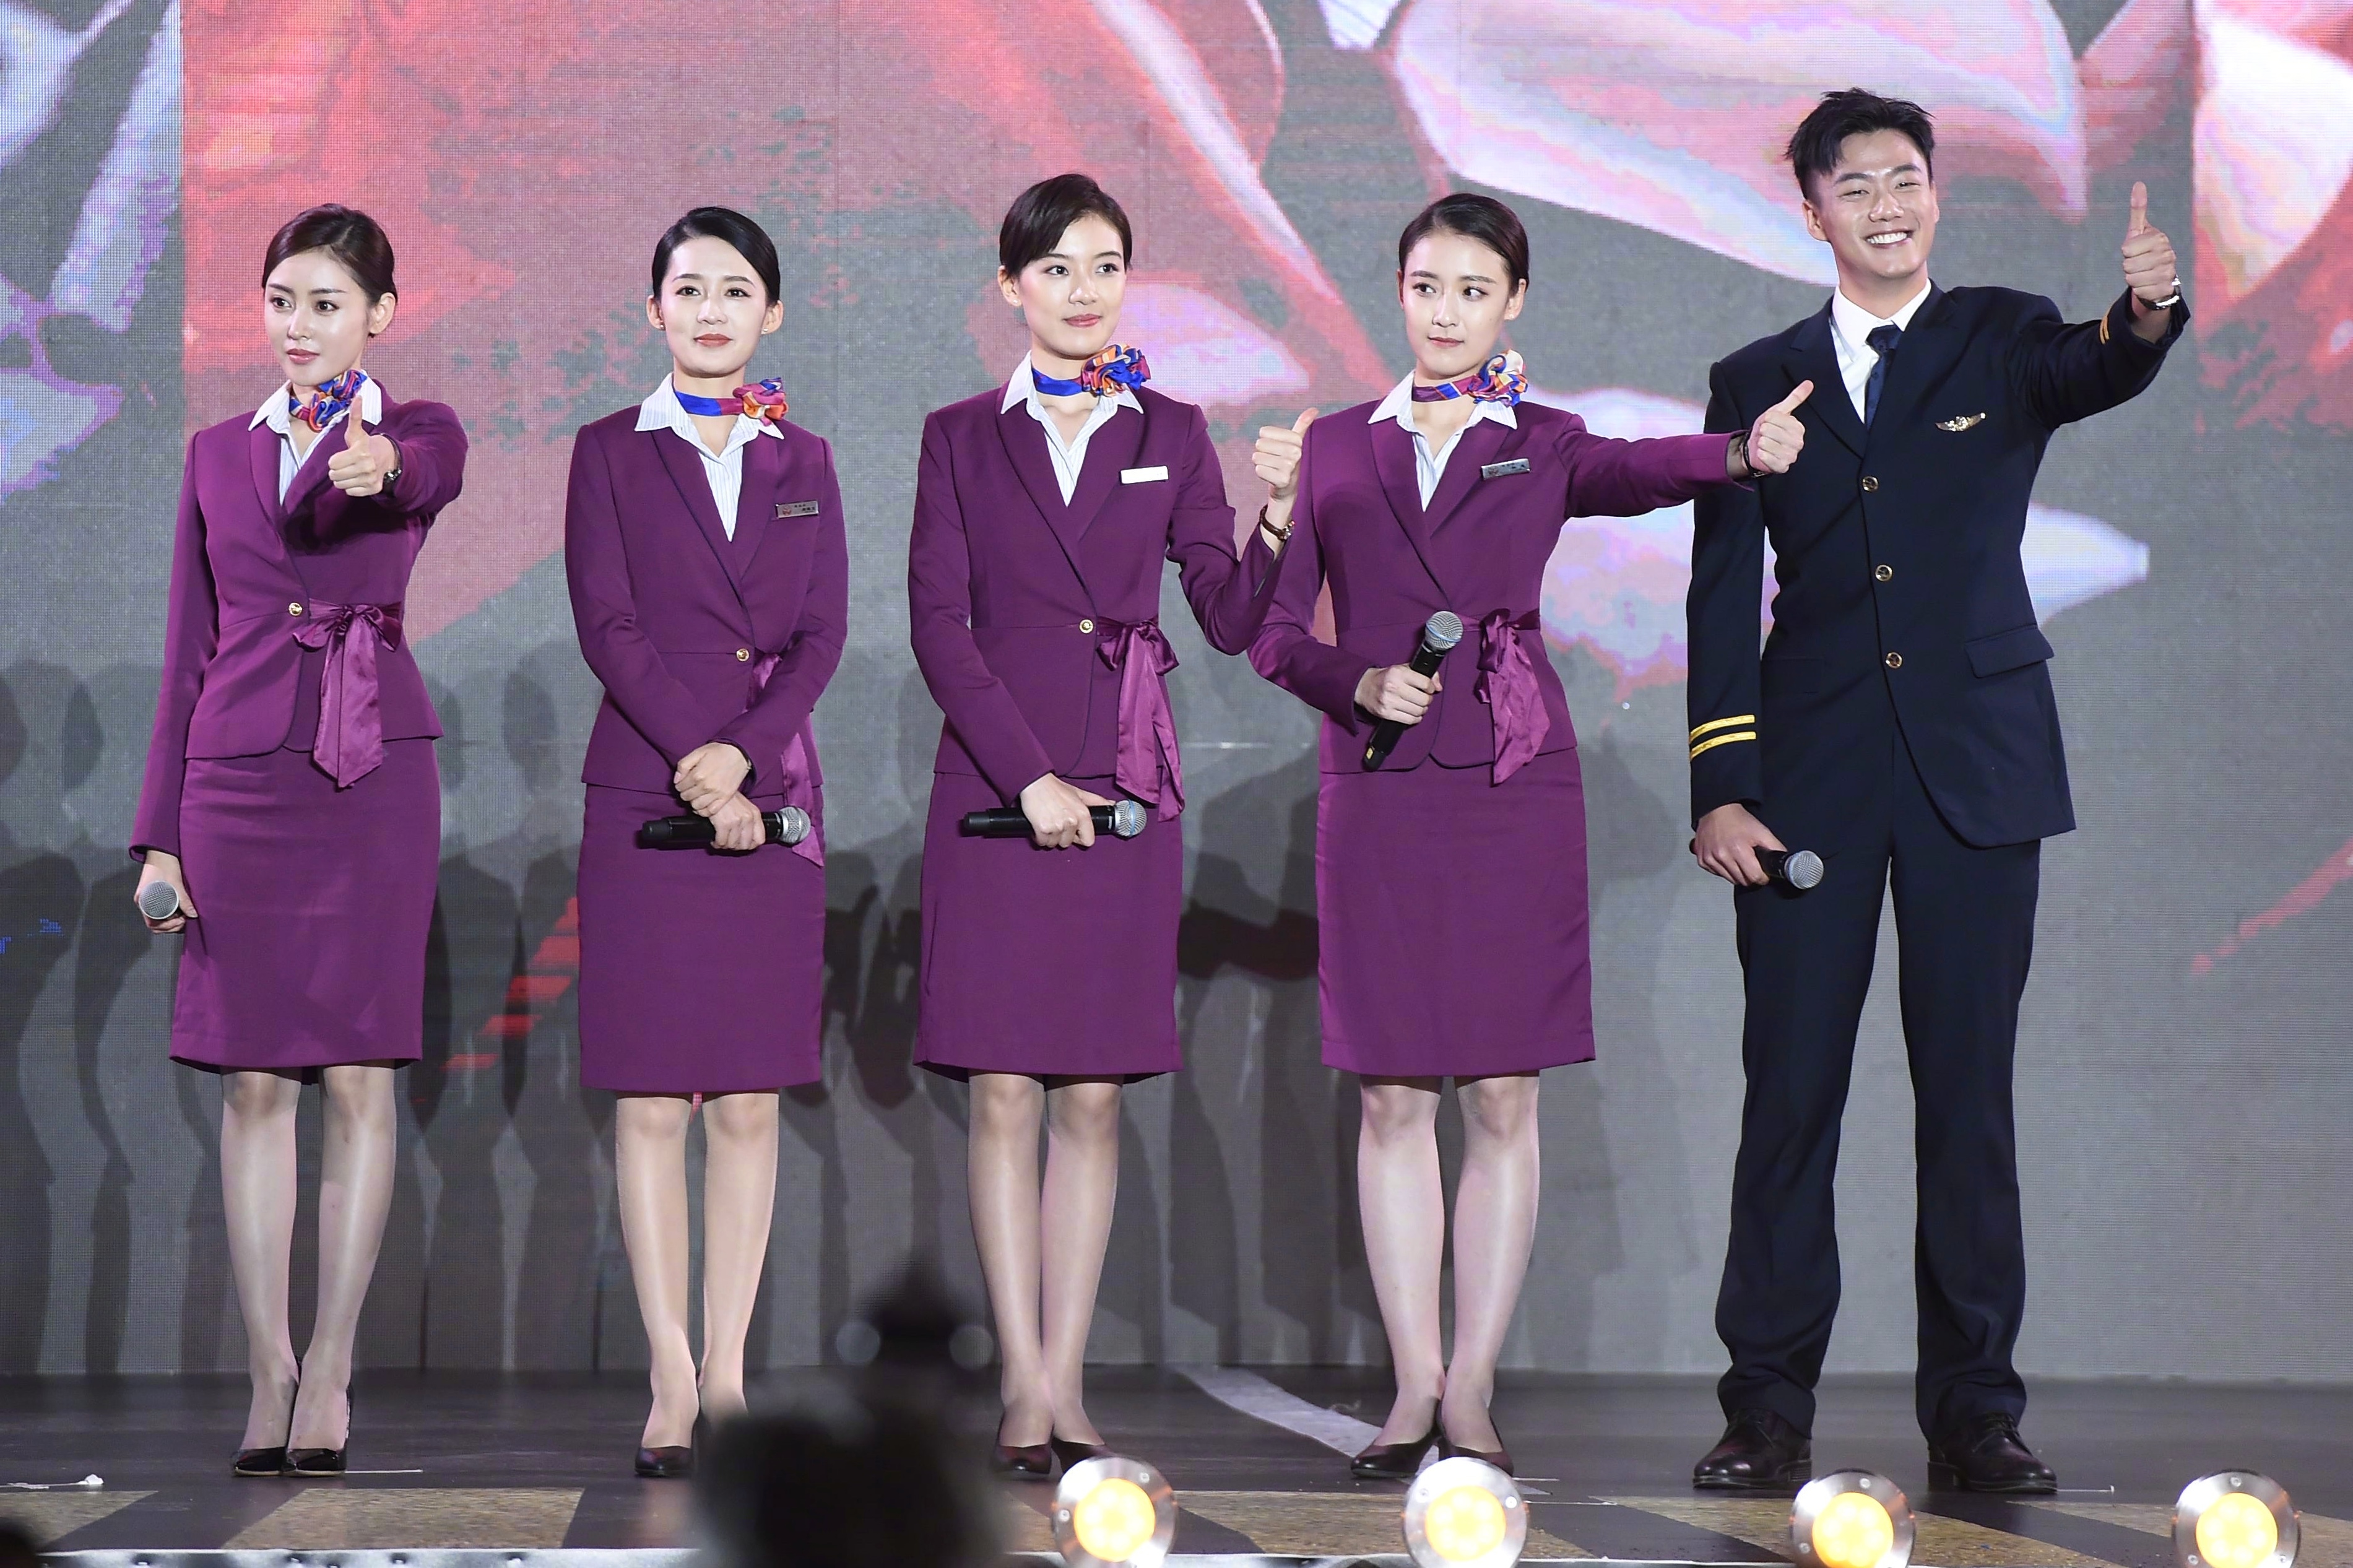 《中国机长》在重庆举办首映礼,张天爱,李沁亮相